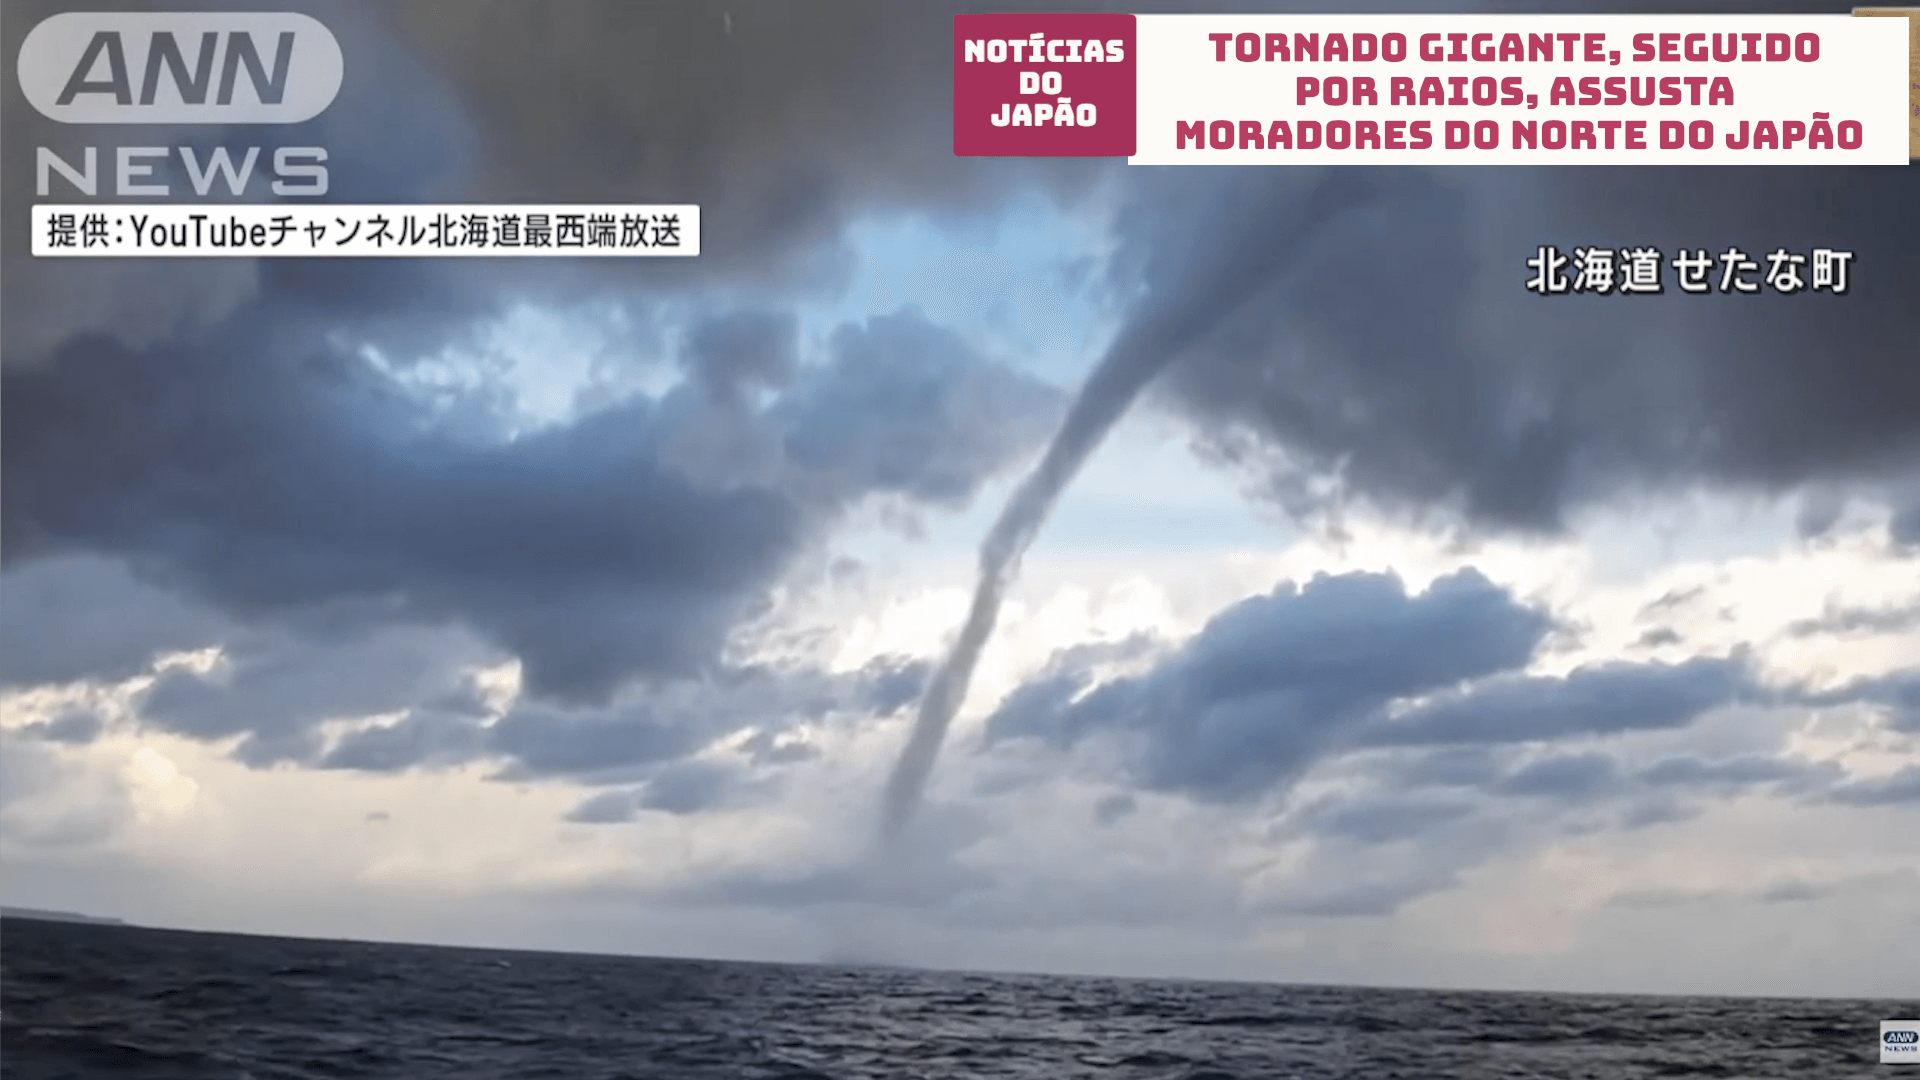 Tornado gigante, seguido por raios, assusta moradores do norte do Japão 